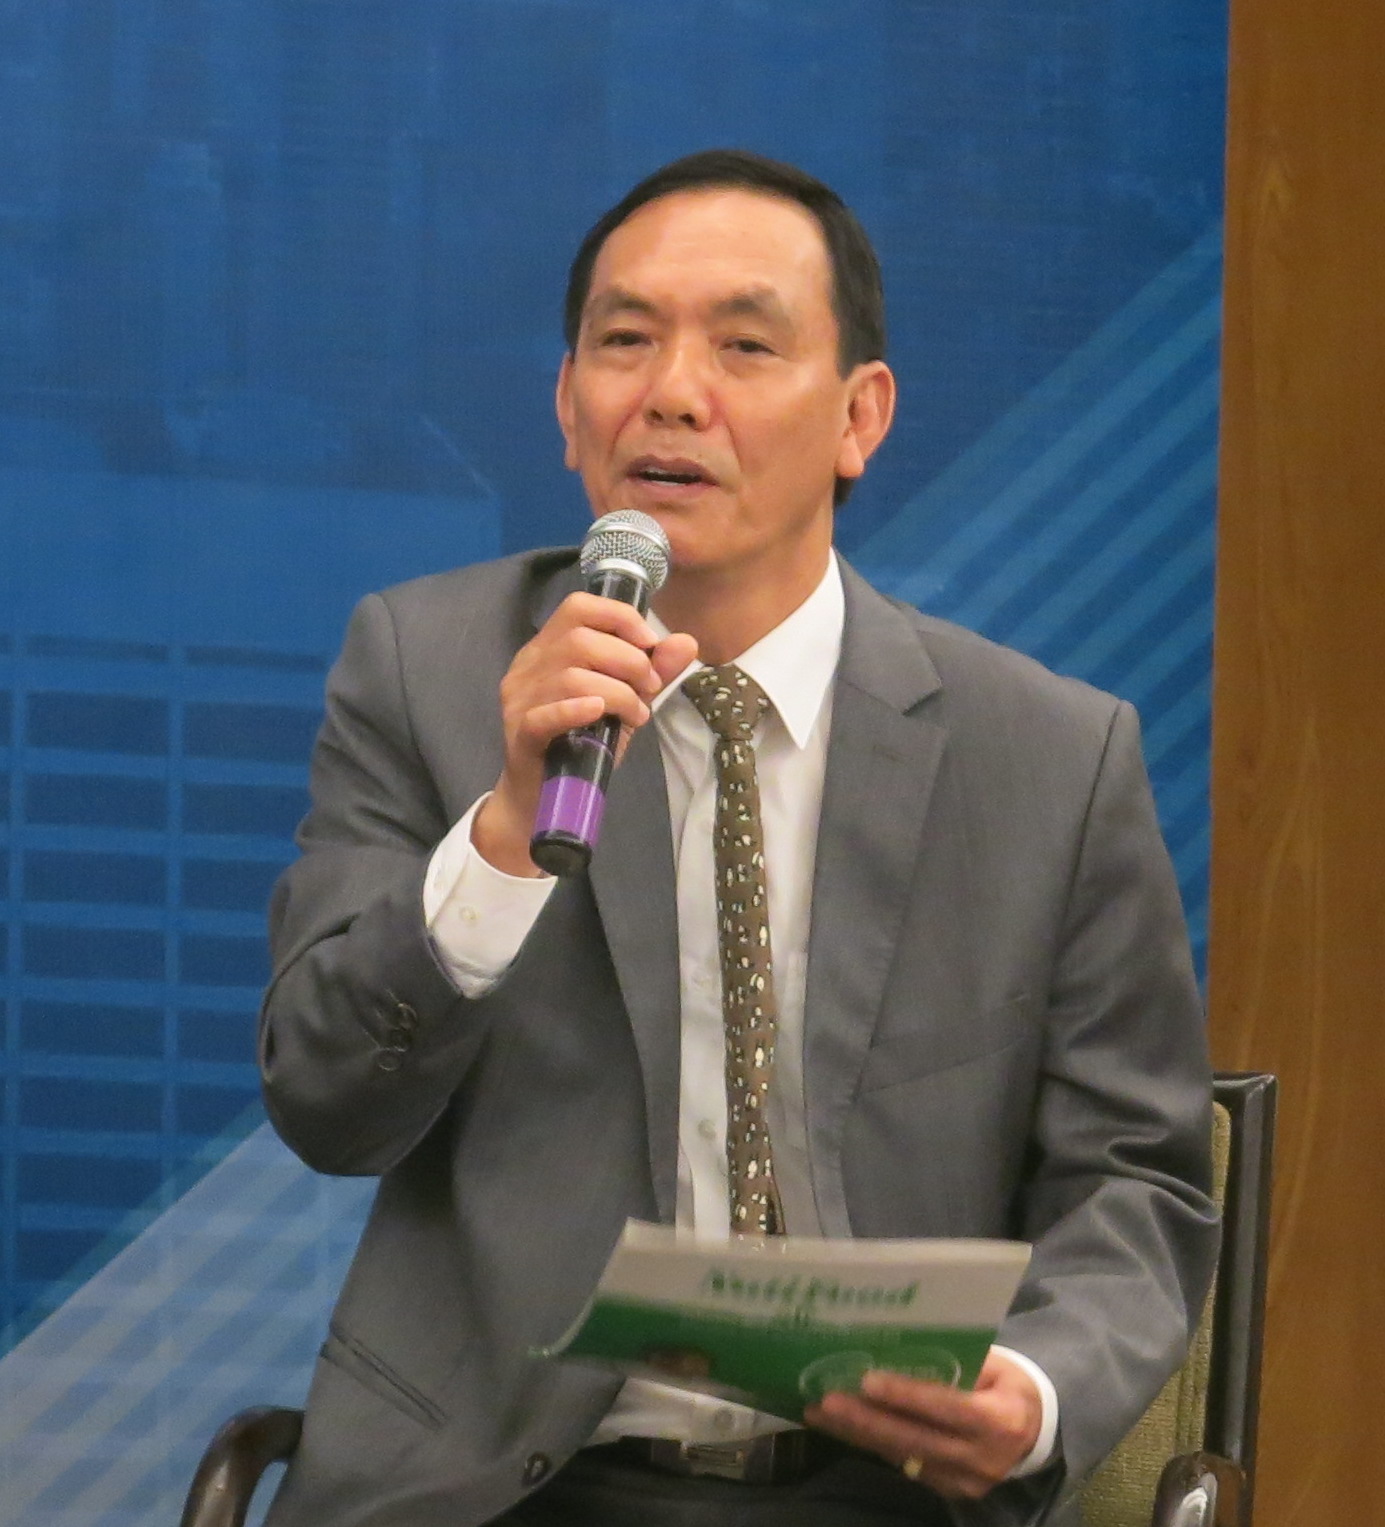 Ông Lê Nguyên Hòa, Phó chủ tịch HĐQT Công ty CP NutiFood chia sẻ về kinh nghiệm xây dựng năng lực đáp ứng tiêu chuẩn cao về an toàn thực phẩm của Mỹ  